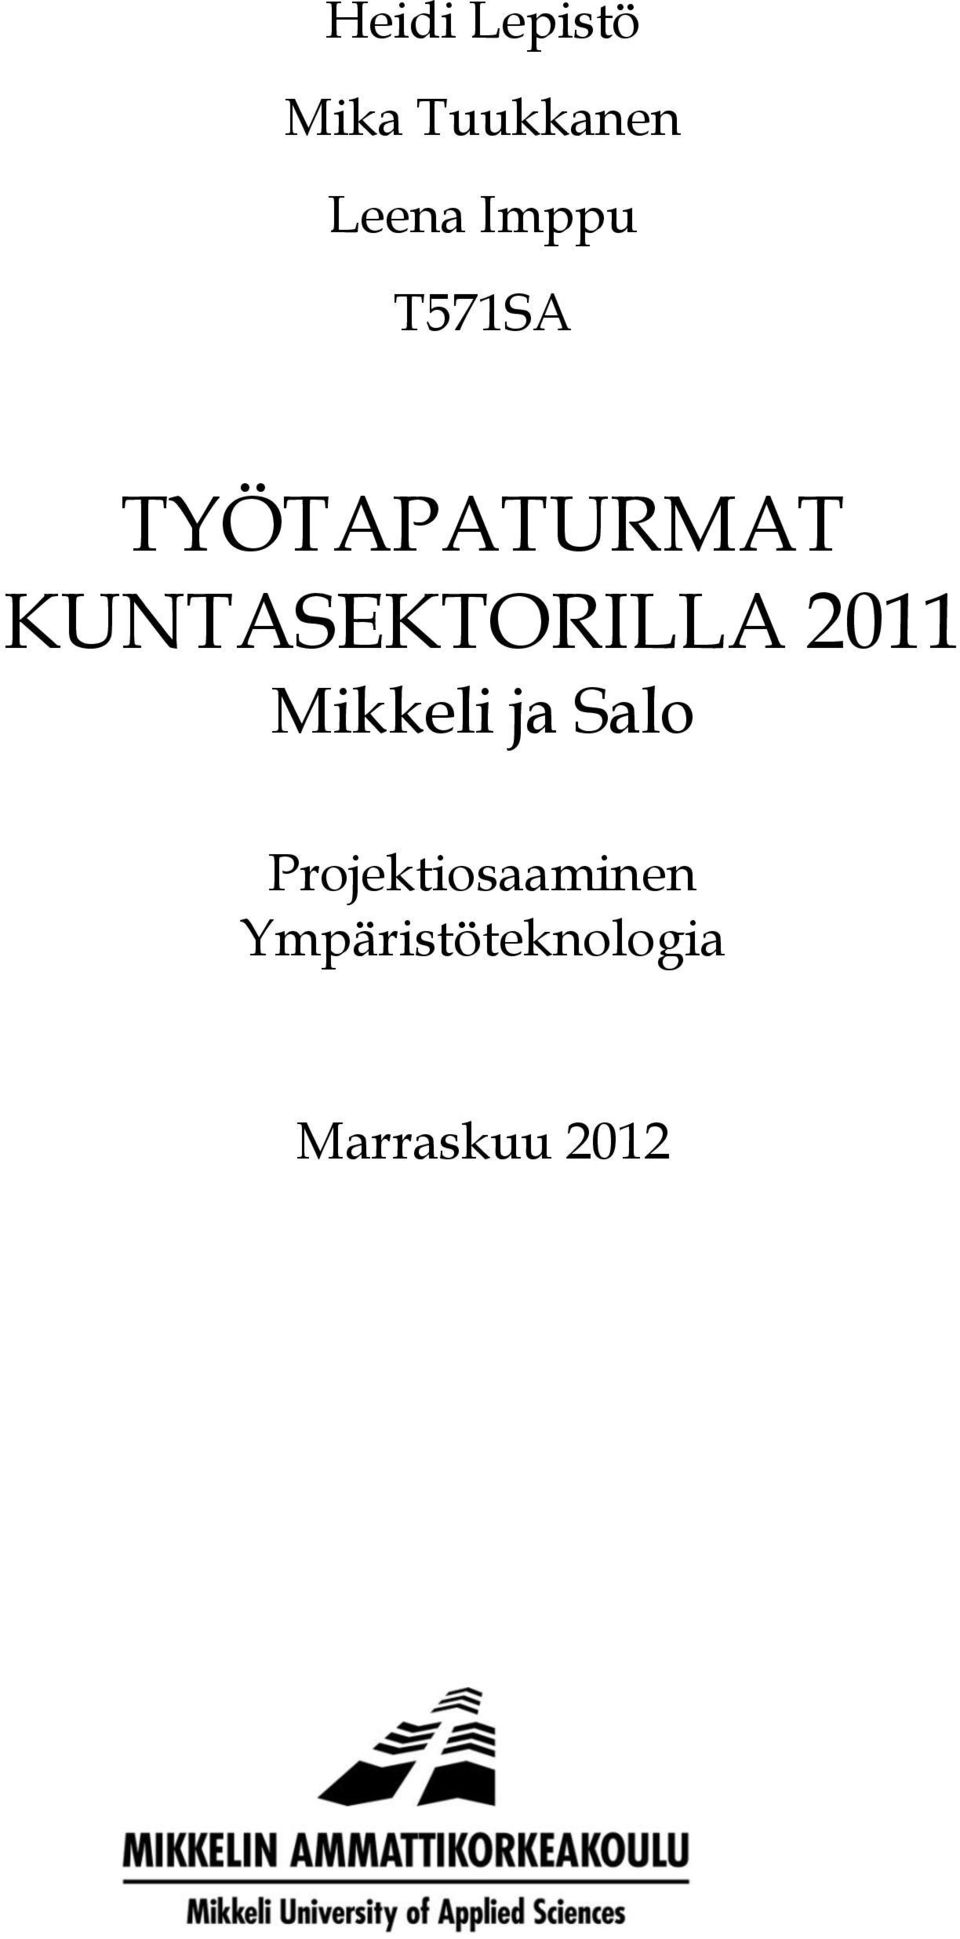 KUNTASEKTORILLA 2011 Mikkeli ja Salo